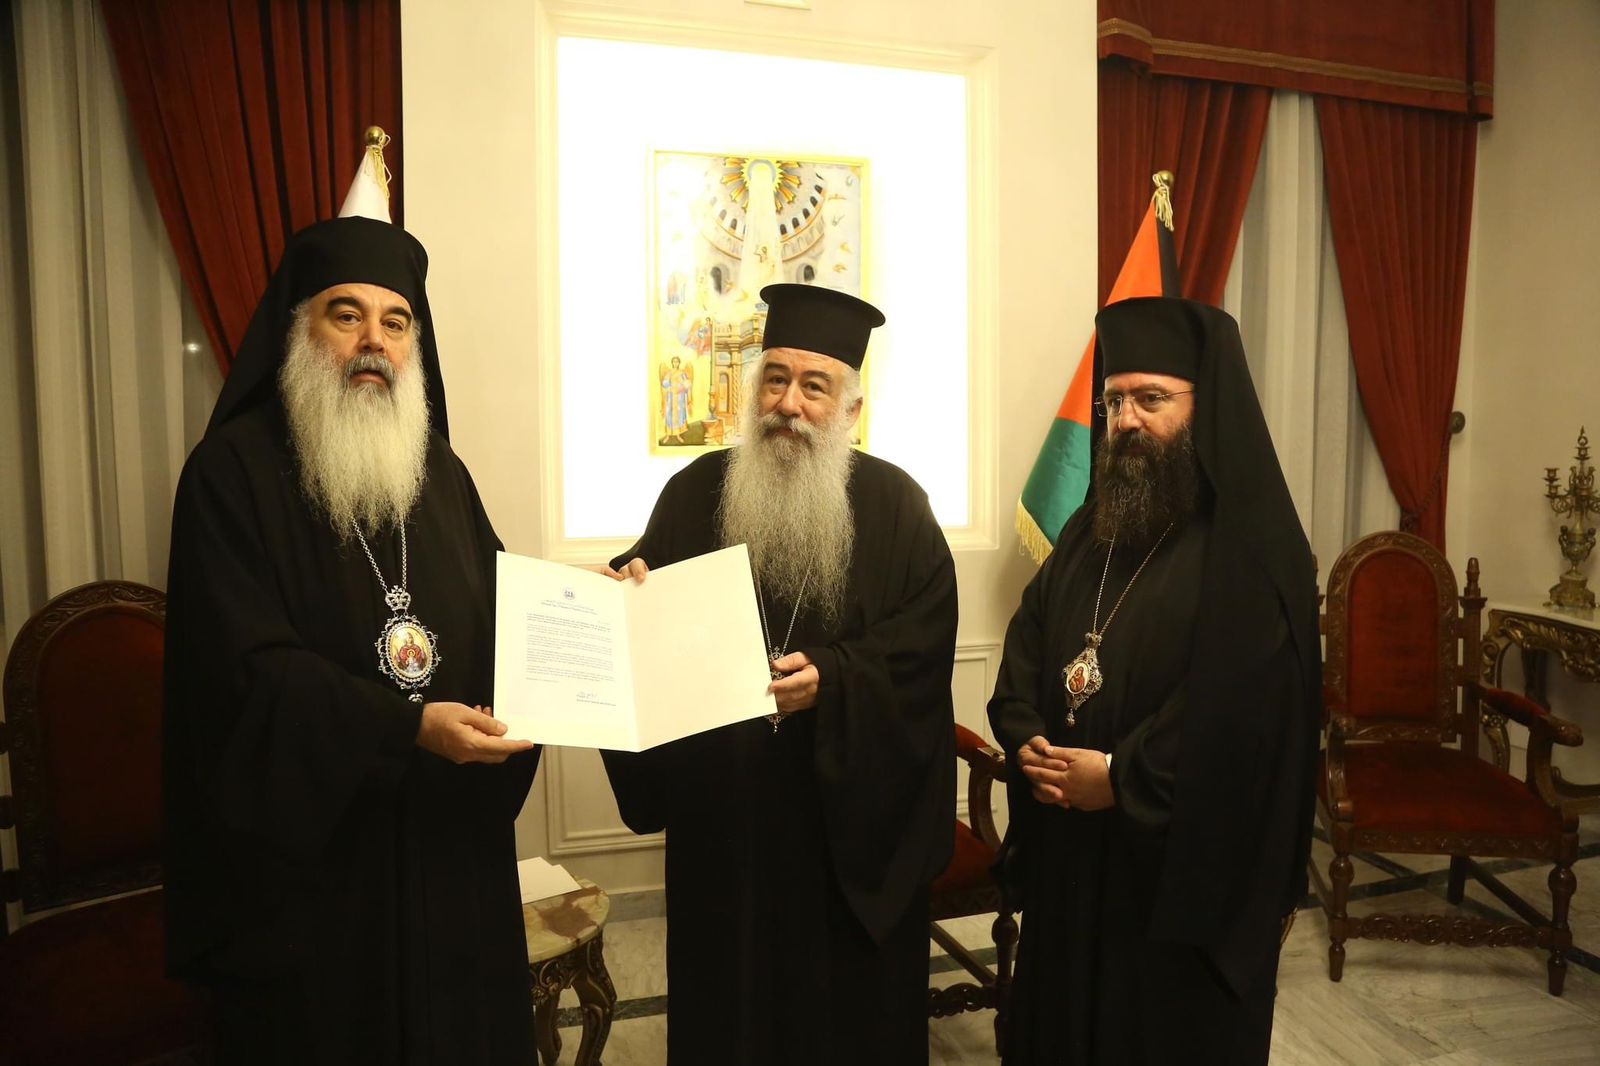 Les relations ecclésiastiques rétablies entre les patriarches d’Antioche et de Jérusalem